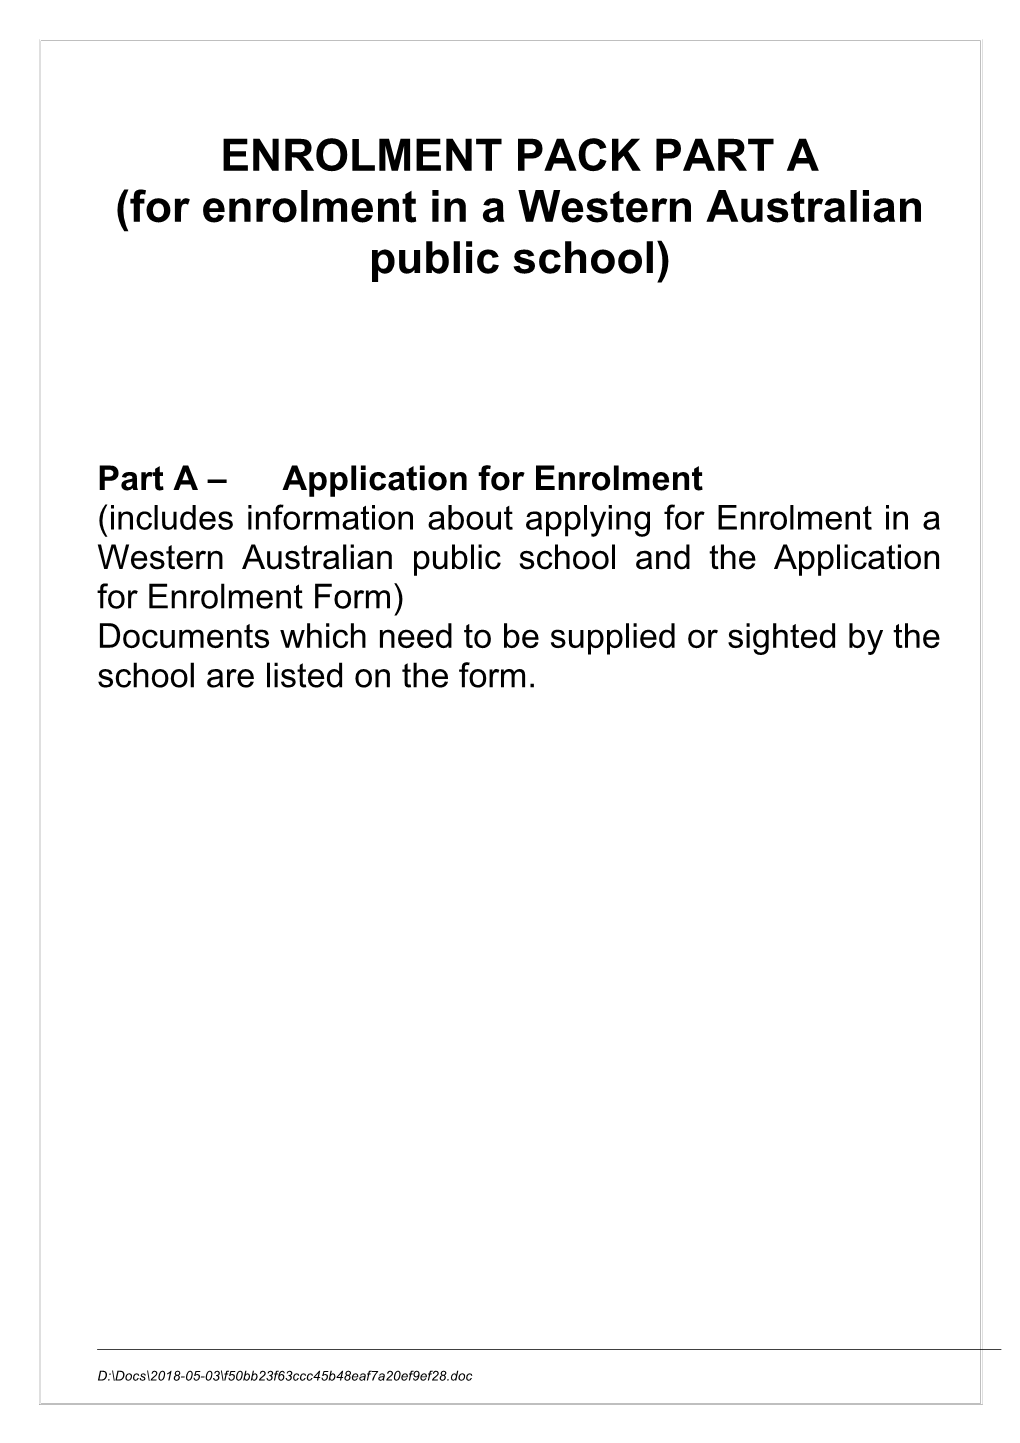 For Enrolment in a Western Australian Public School